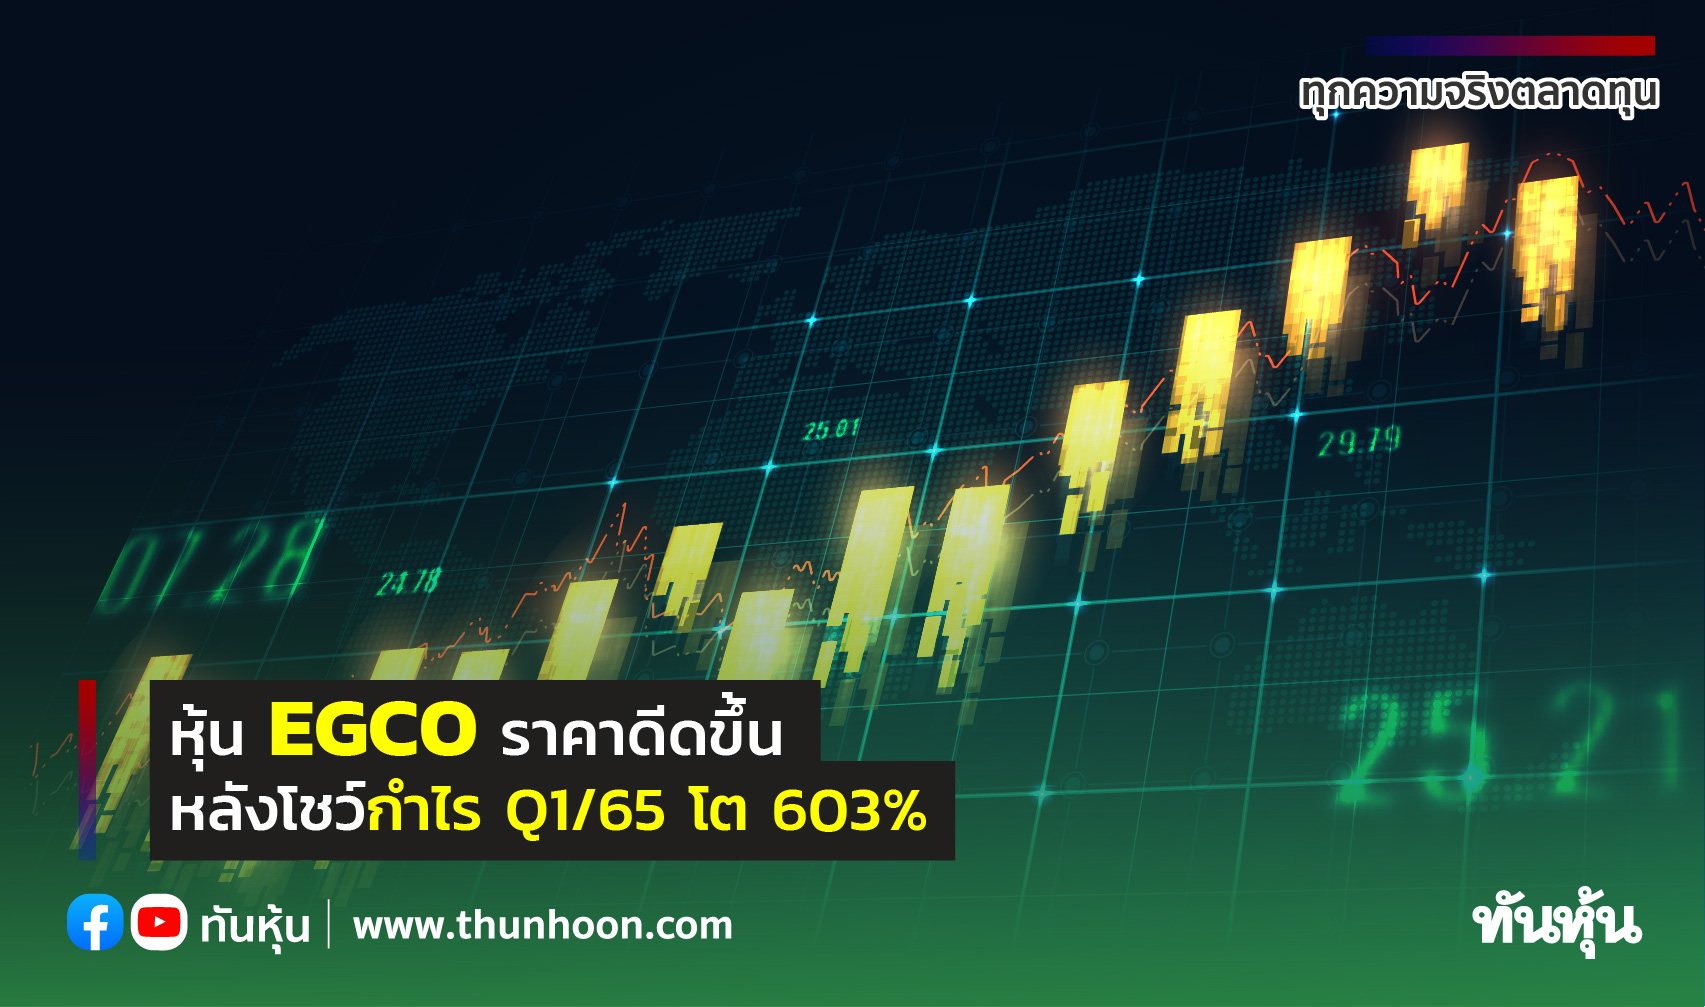 หุ้น EGCO ราคาดีดขึ้น 5.28% หลังโชว์กำไร Q1/65 โต 603%